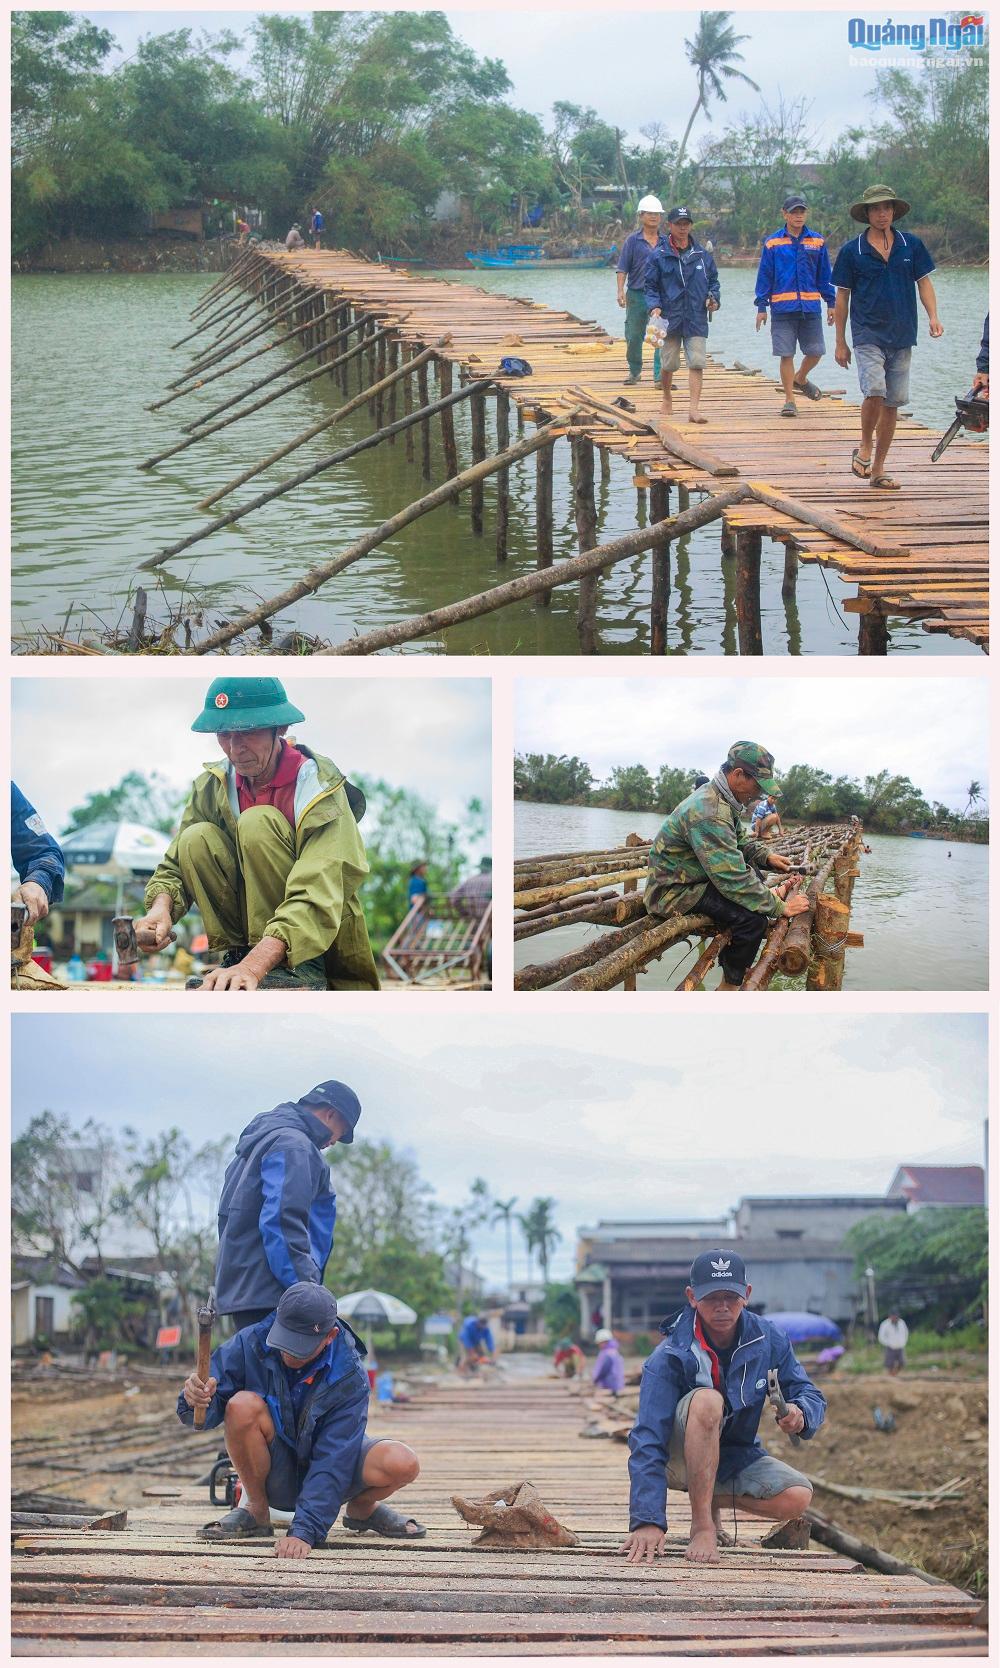 Sau mùa lũ, chiếc cầu ván gỗ đã bị nước sông Trà Bồng cuốn trôi, ảnh hưởng đến sinh hoạt của người dân nơi đây, người dân xóm Đông Min muốn đi qua trung tâm xã Bình Dương hay tới nơi khác phải đi vòng một quảng đường khá xa.